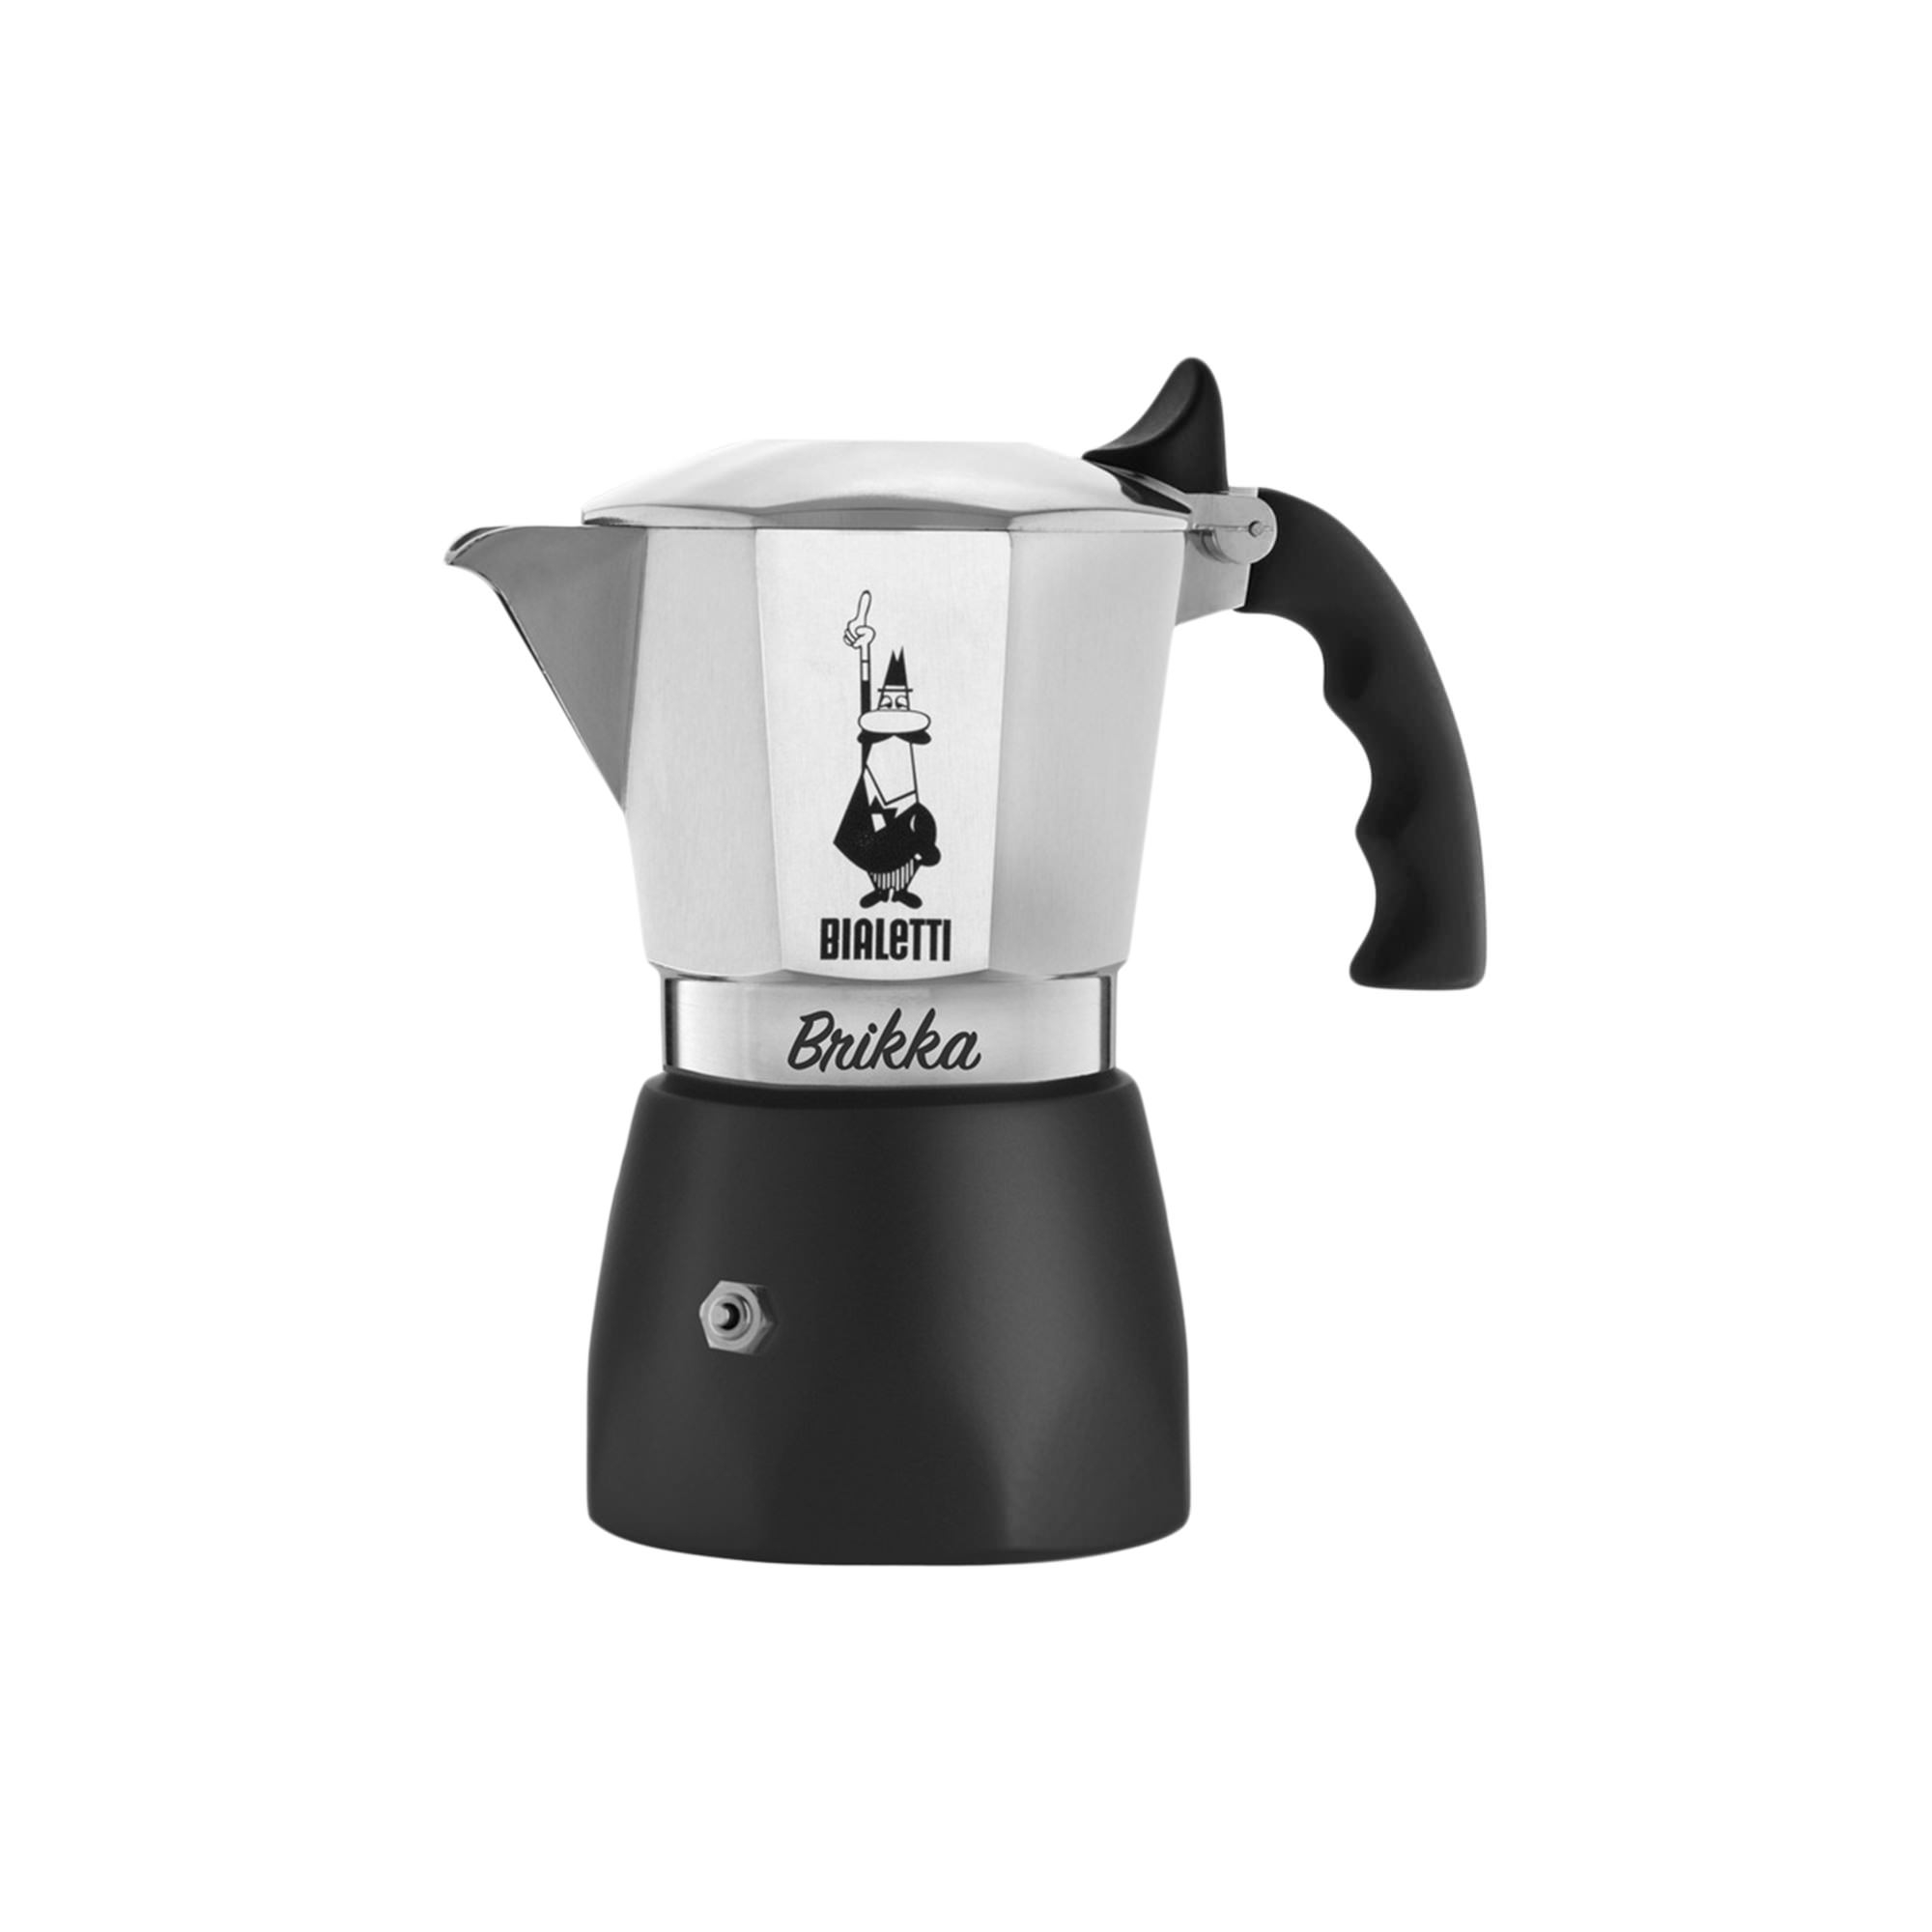 Bialetti Brikka Espresso Maker 4 Cup Silver Image 1